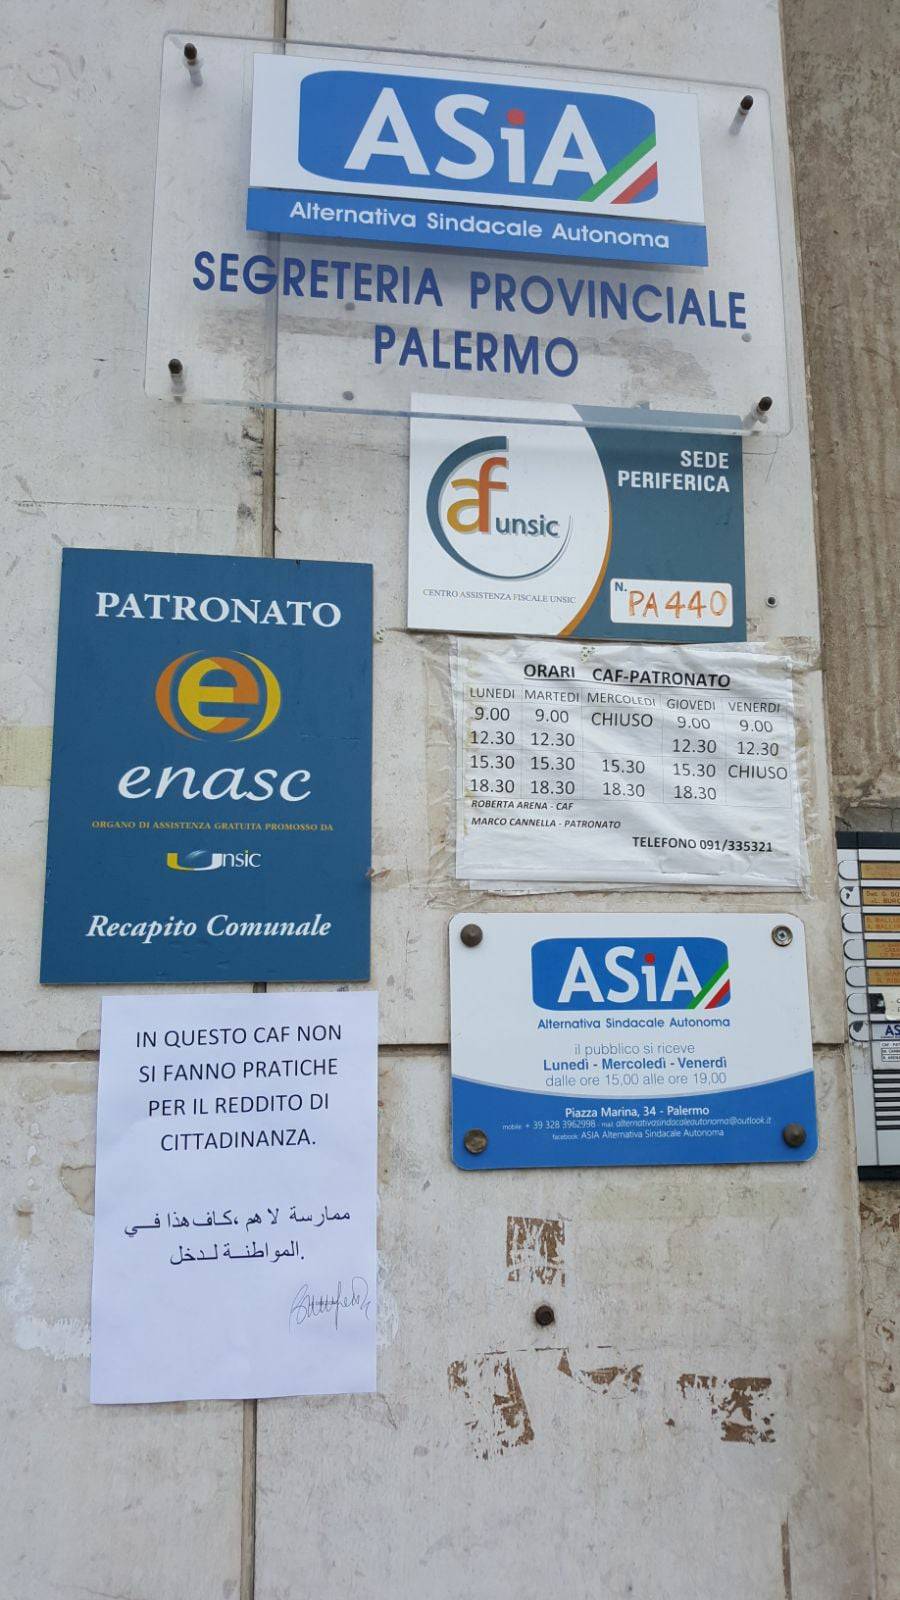 "Qui non si fanno pratiche per reddito di cittadinanza": l'avviso in Caf di Palermo